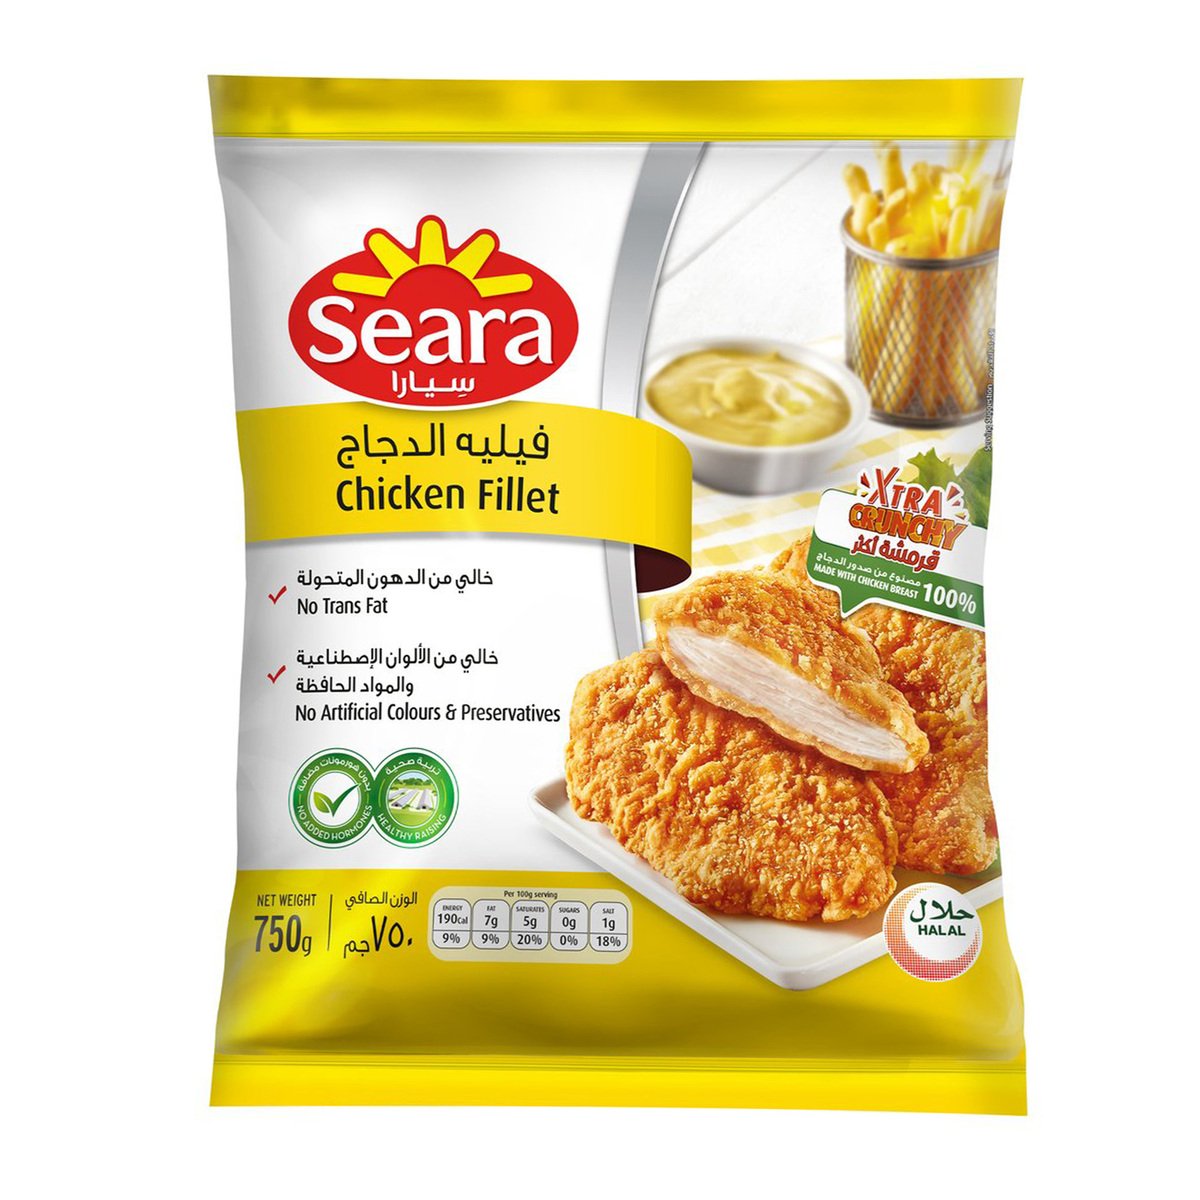 Seara Chicken Fillet Value Pack 750 g